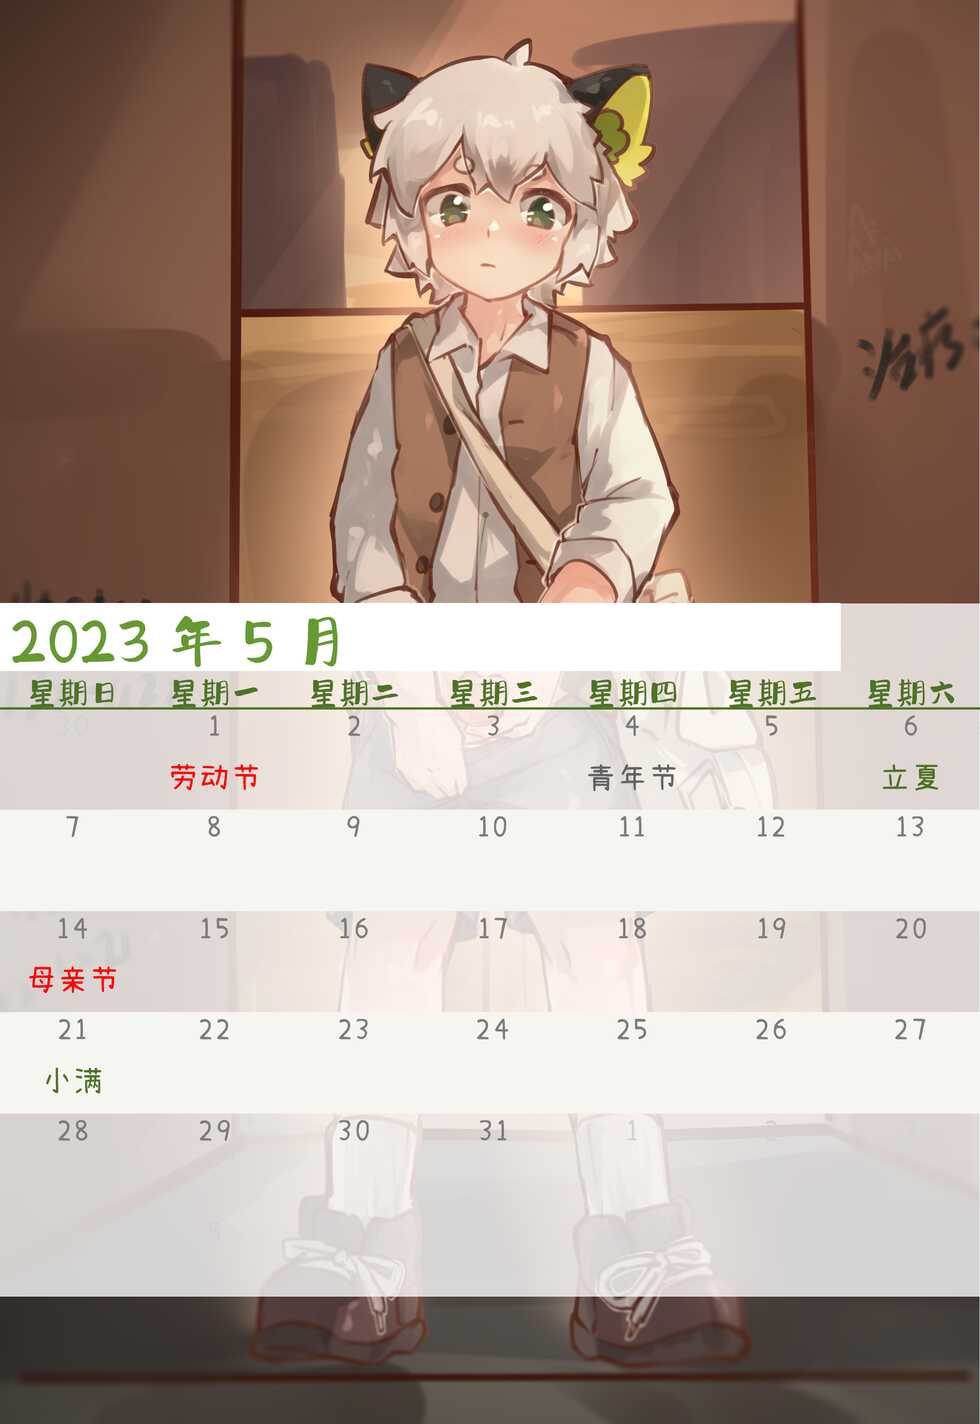 [Suka Genmei] Luo Xiaohei Calendar - Page 22